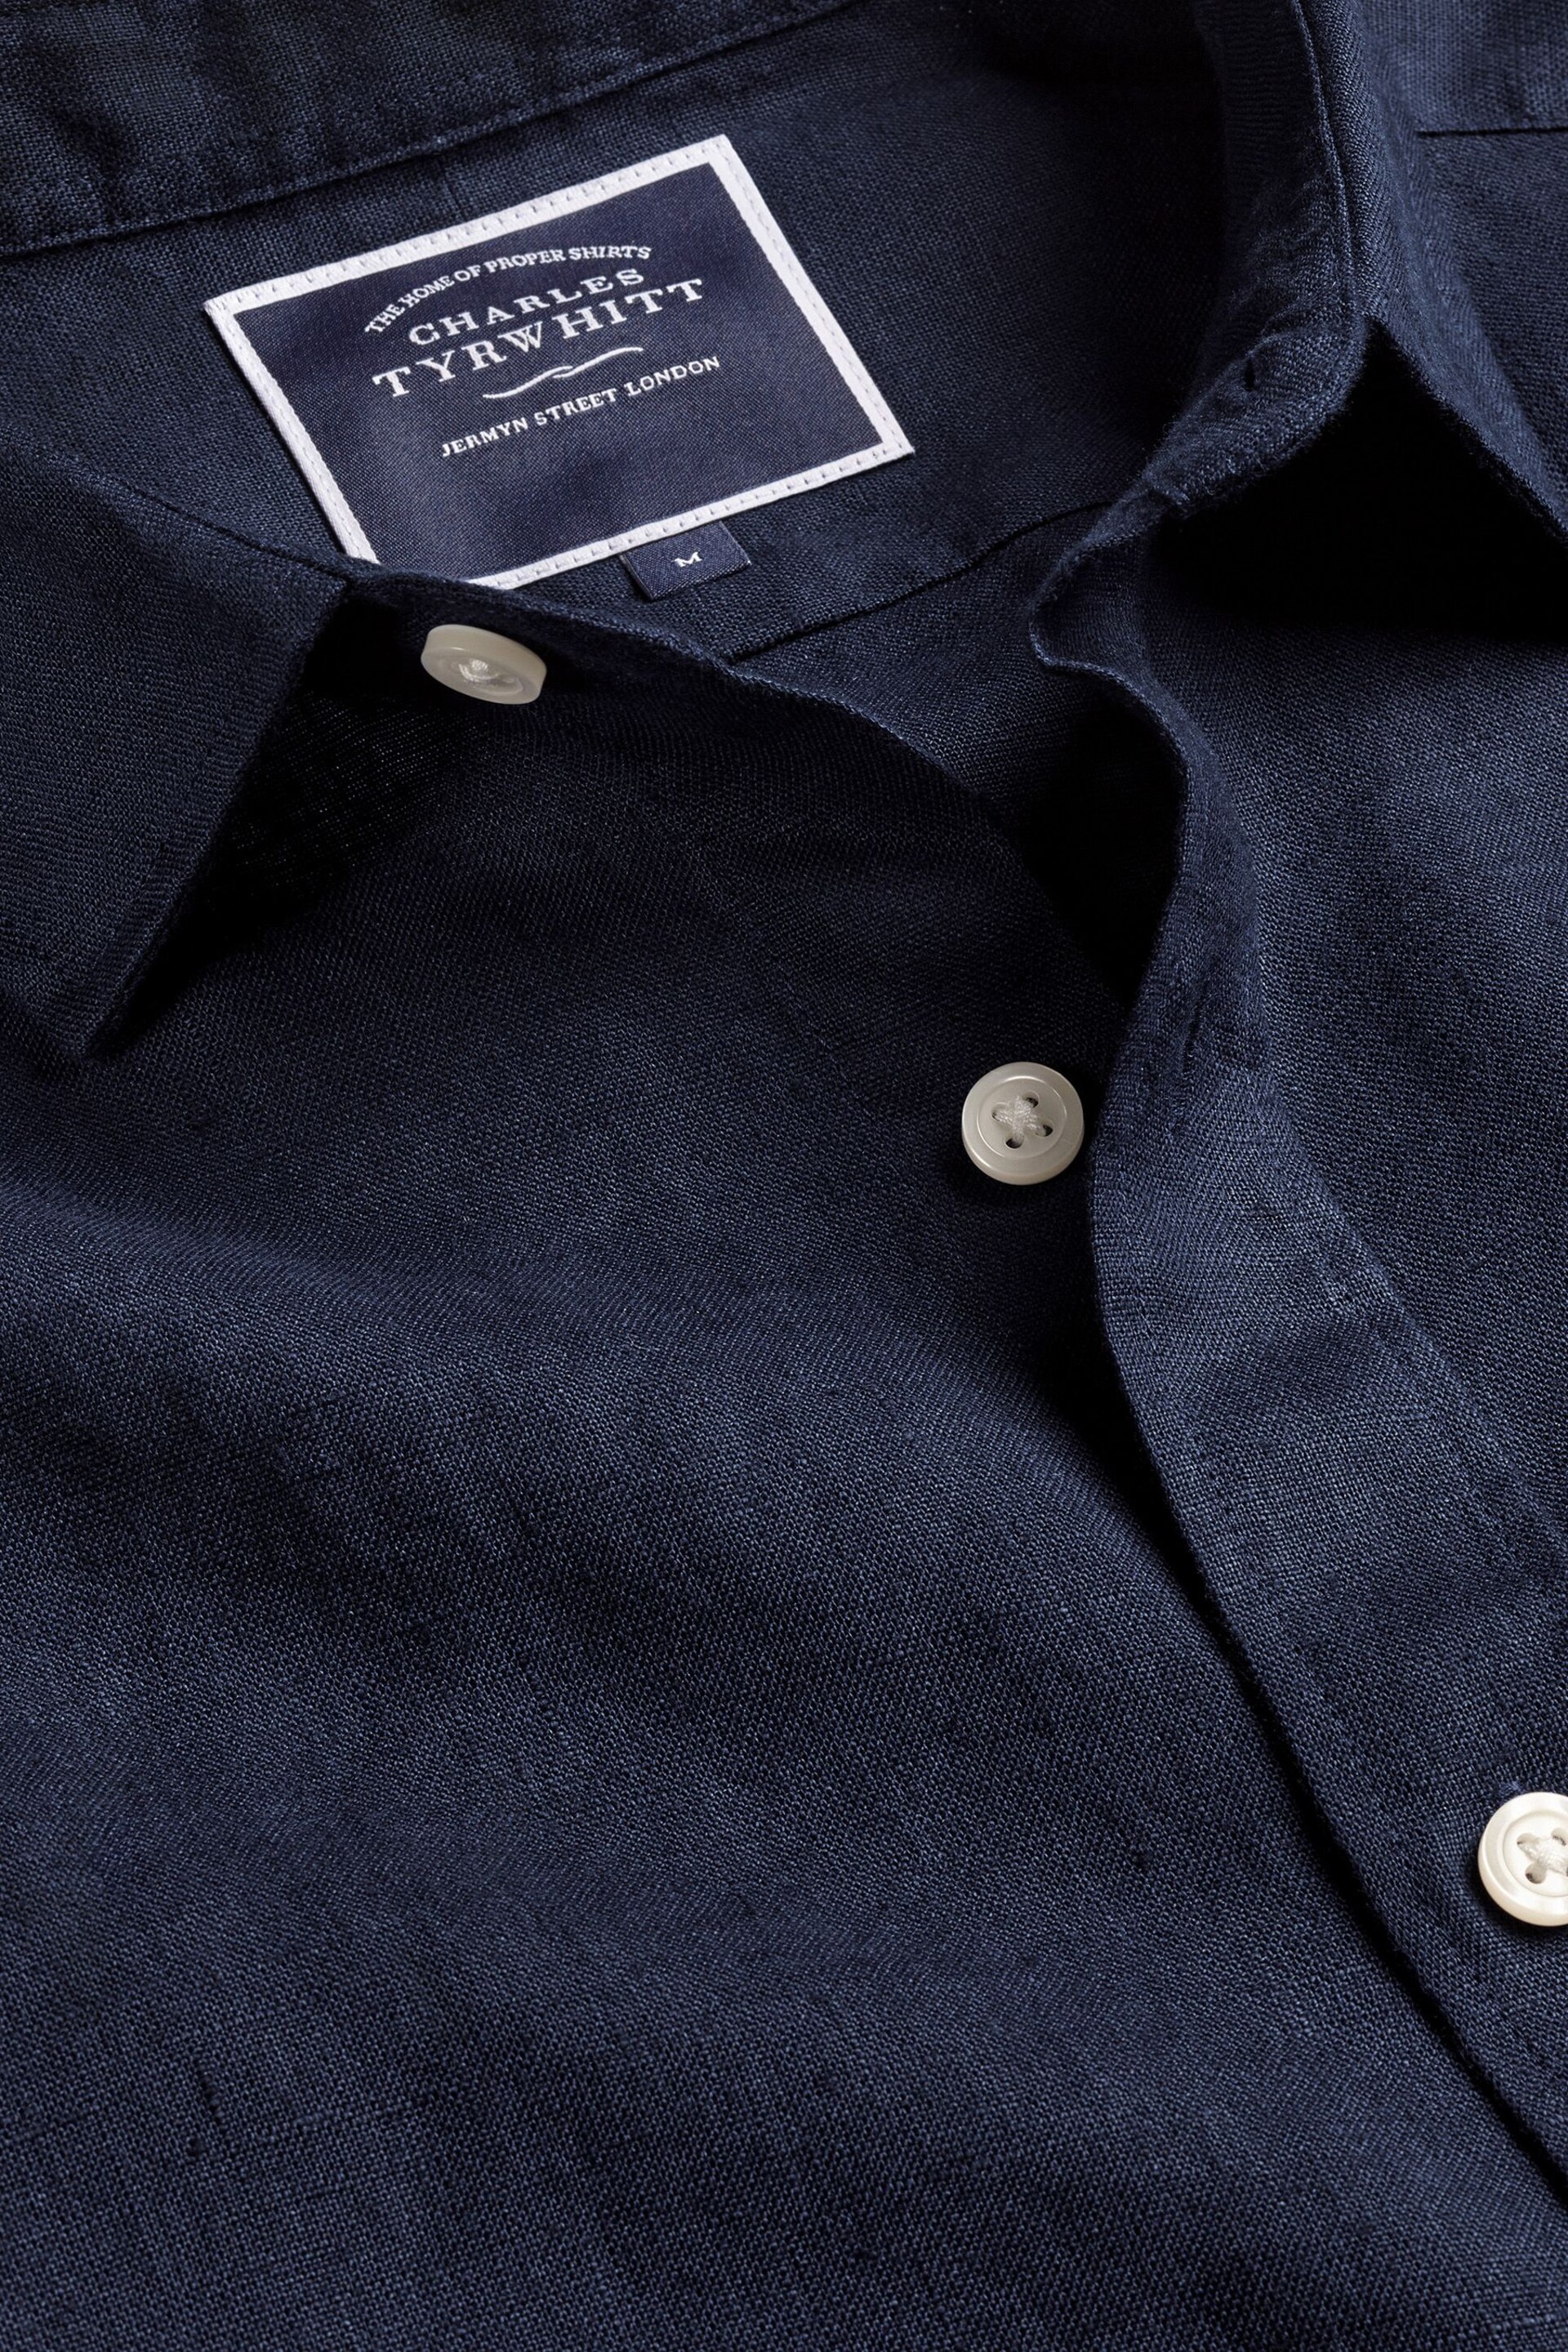 Charles Tyrwhitt Blue Slim Fit Plain Short Sleeve Pure Linen Full Sleeves Shirt - Image 5 of 5